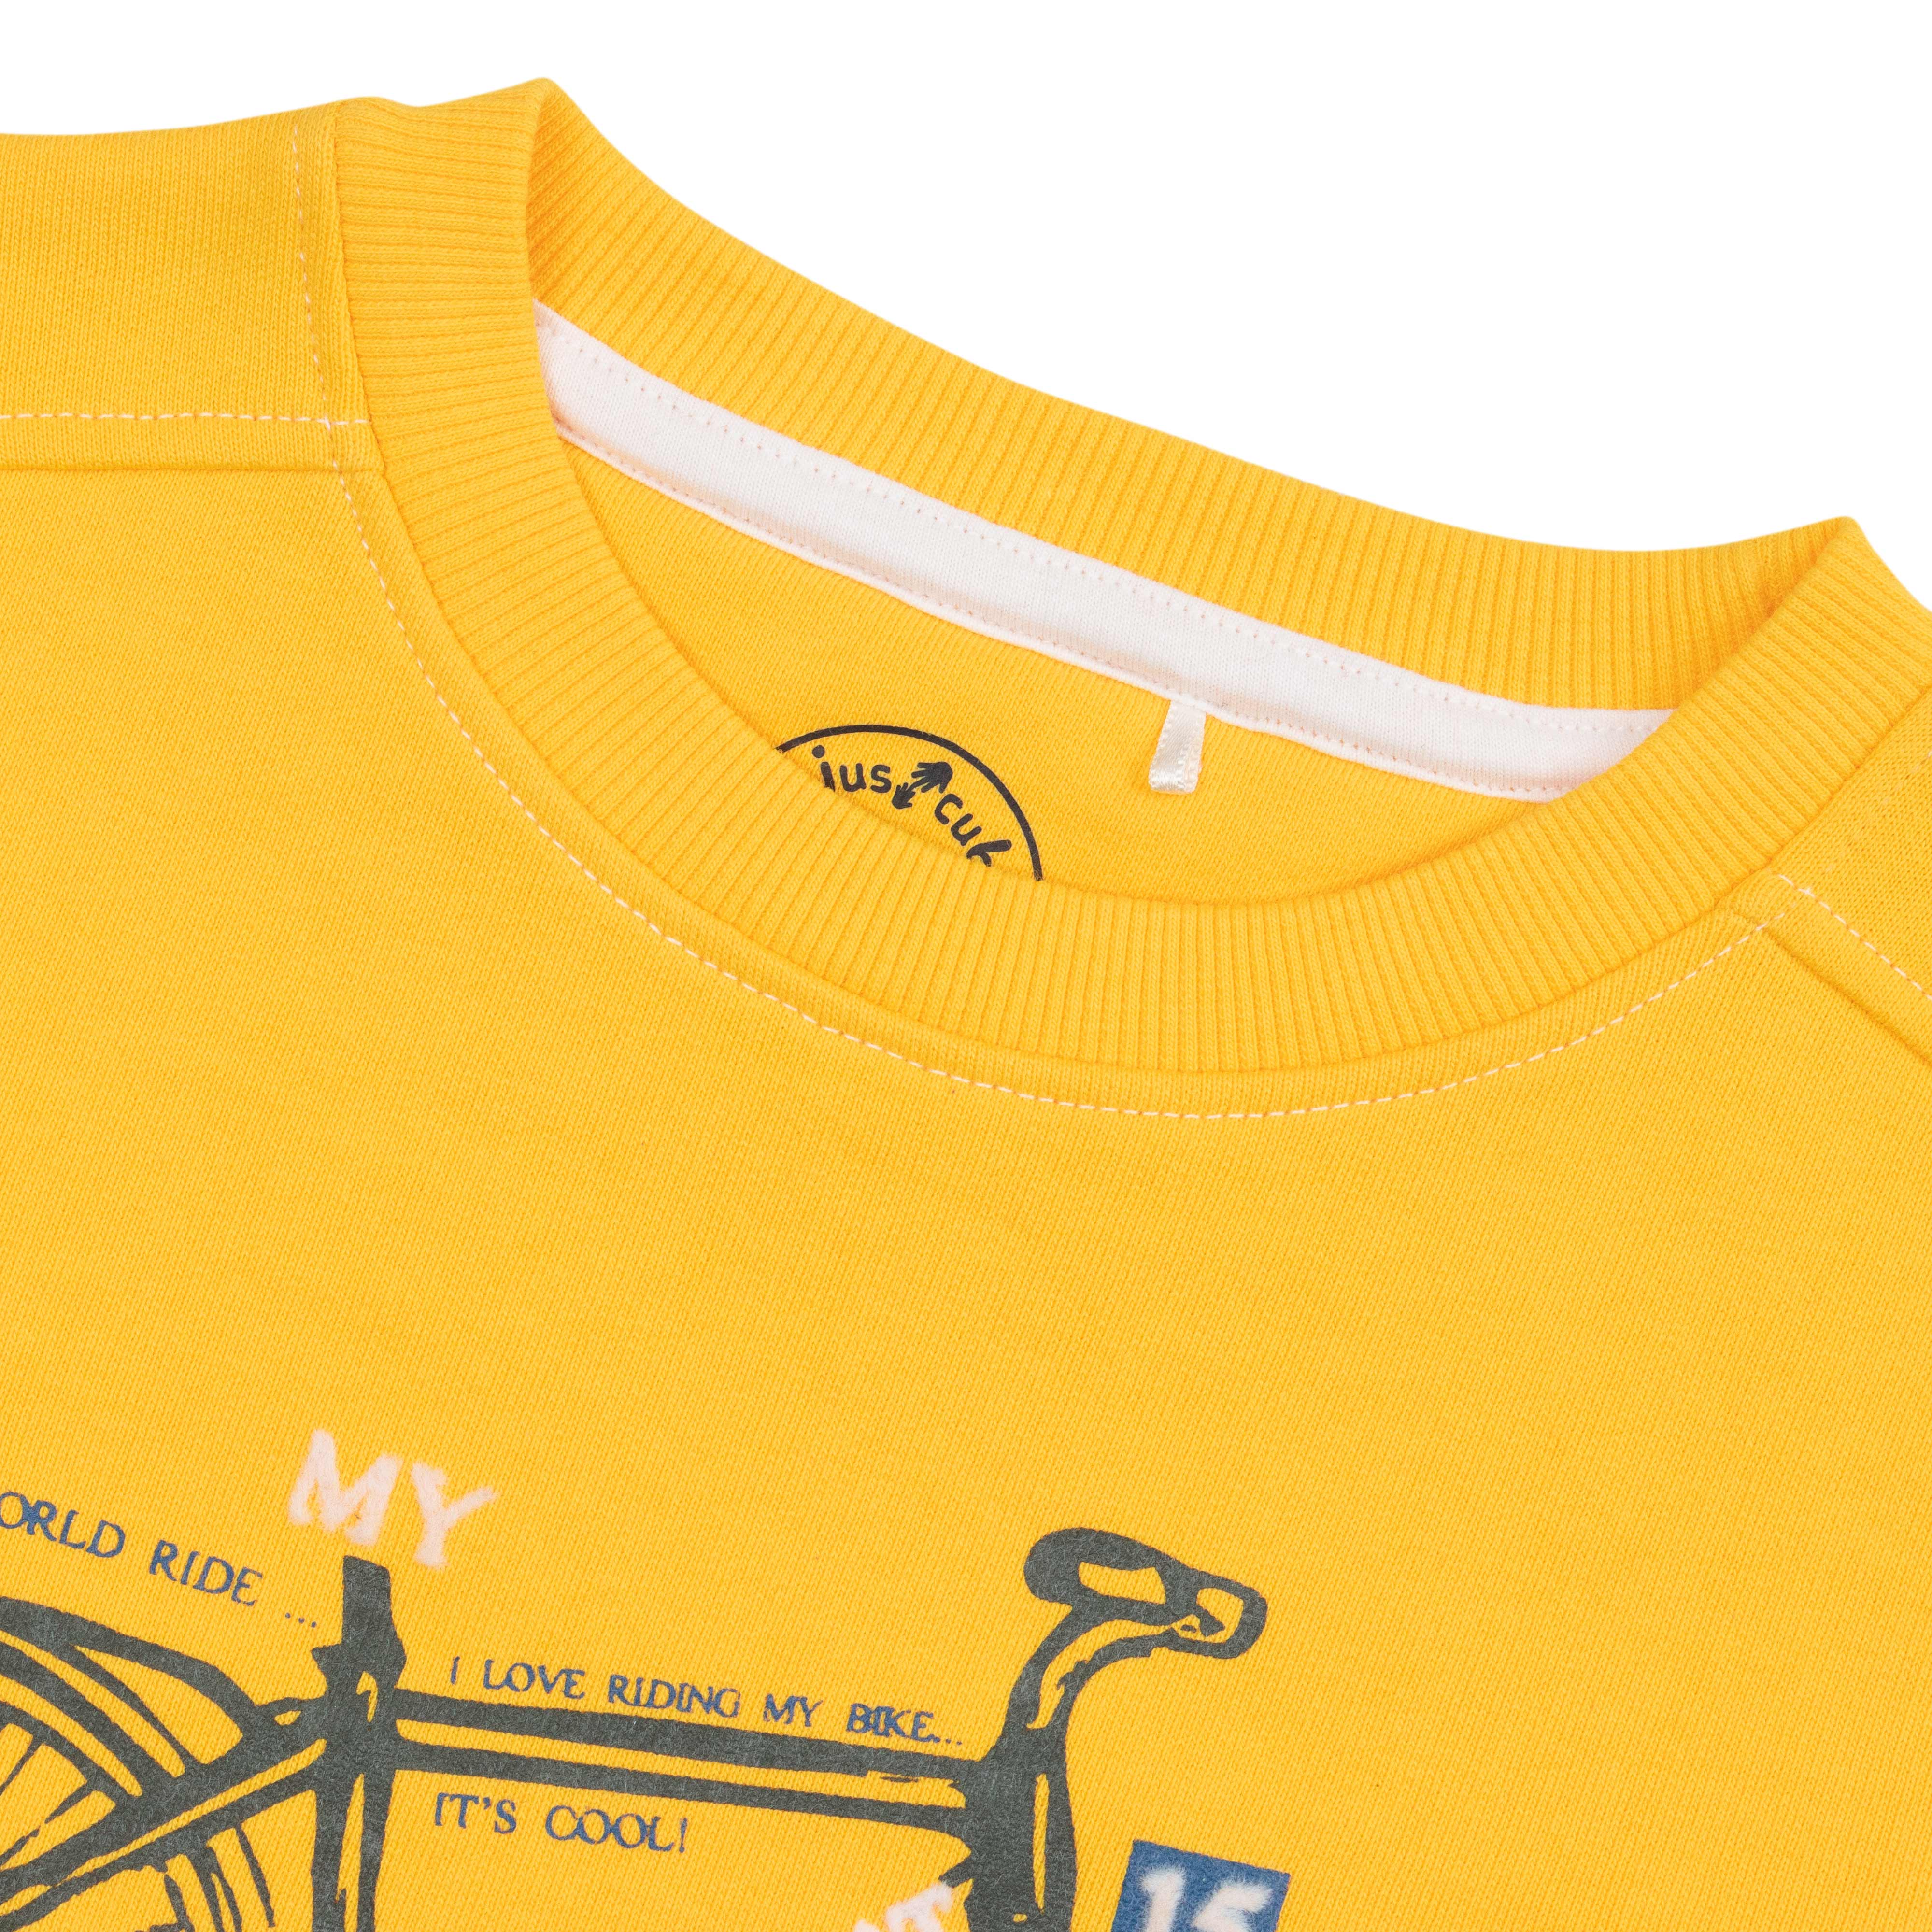 Young Boys Cycle Printed Sweatshirt